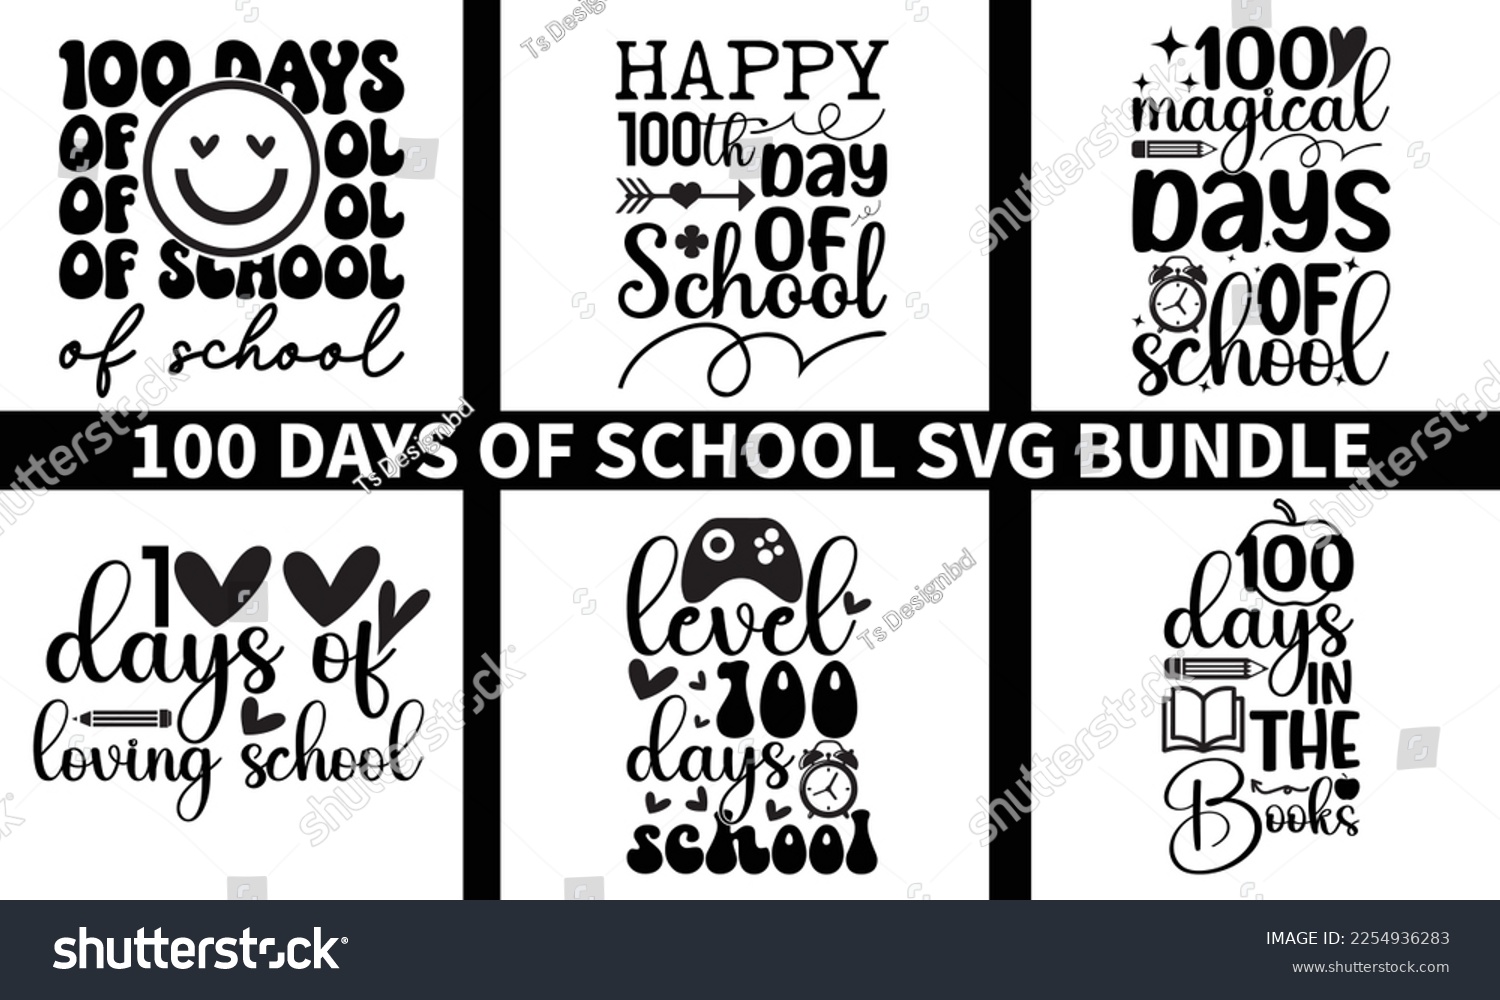 SVG of 100 days of school svg design bundle,100th days,vector,svg,eps svg